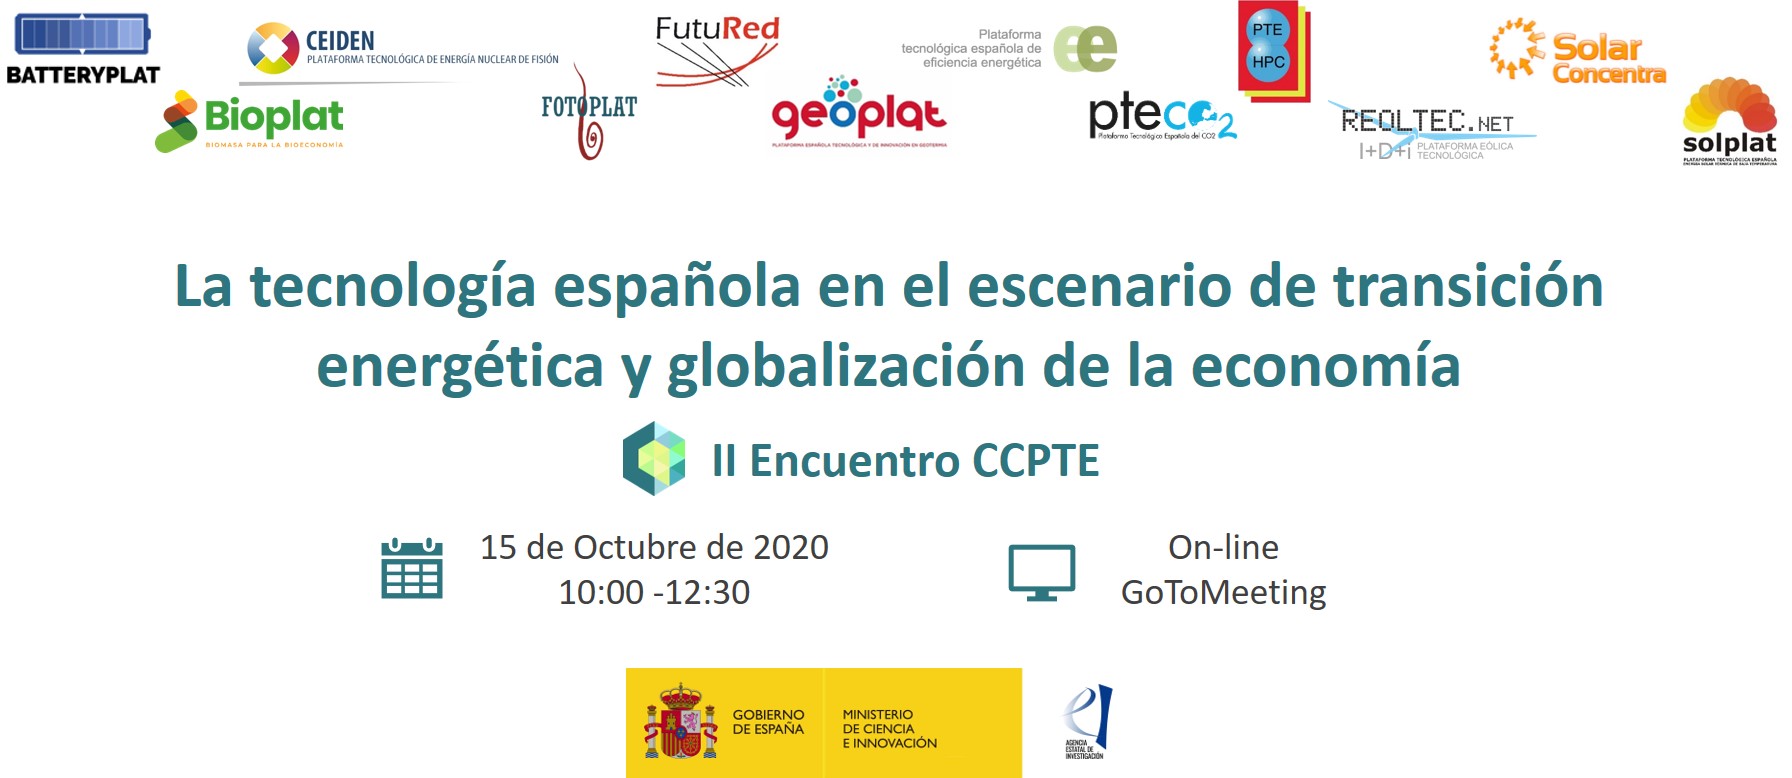 II ENCUENTRO CCPTE: LA TECNOLOGÍA ESPAÑOLA EN EL ESCENARIO DE TRANSICIÓN ENERGÉTICA Y GLOBALIZACIÓN DE LA ECONOMÍA (15 OCT 2020)